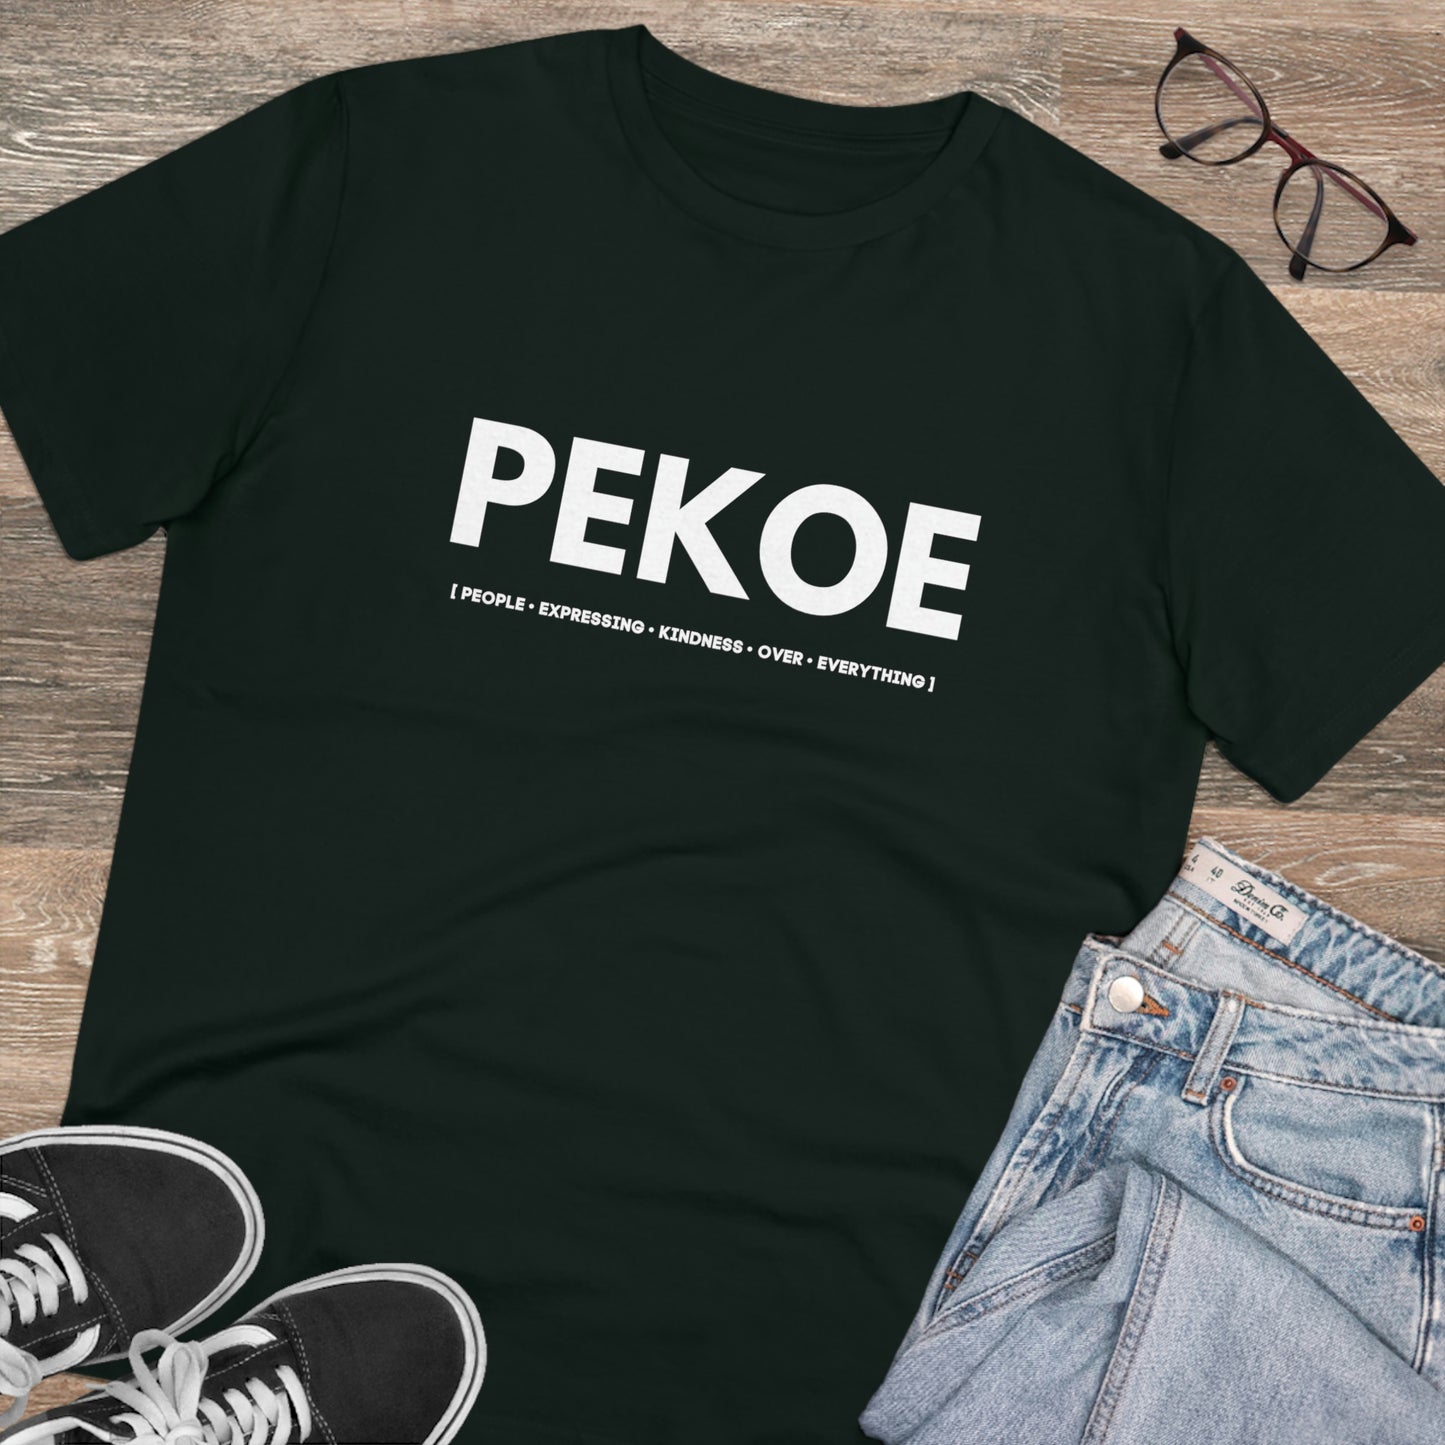 PEKOE Organic T-shirt - Unisex